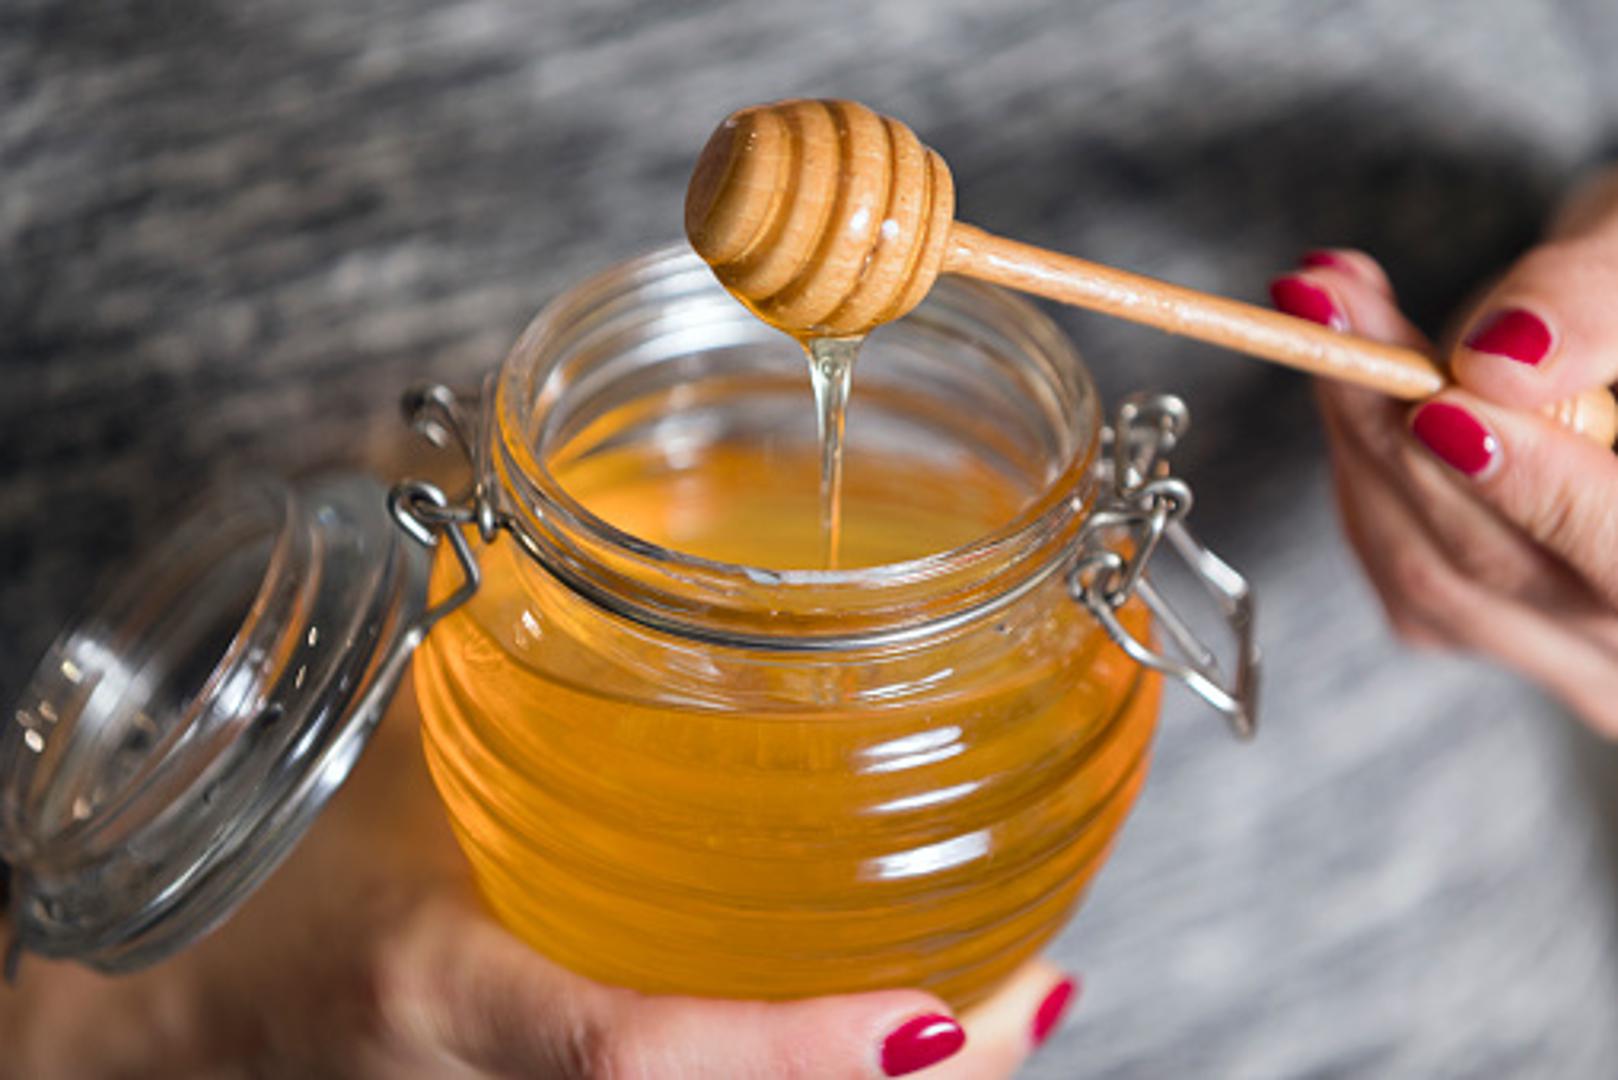 Med je odličan za zdravlje, a njegova dobra strana je što može trajati dugo. Jedina promjena je kristalizacija, ali to je samo znak da se radi o domaćem medu. 